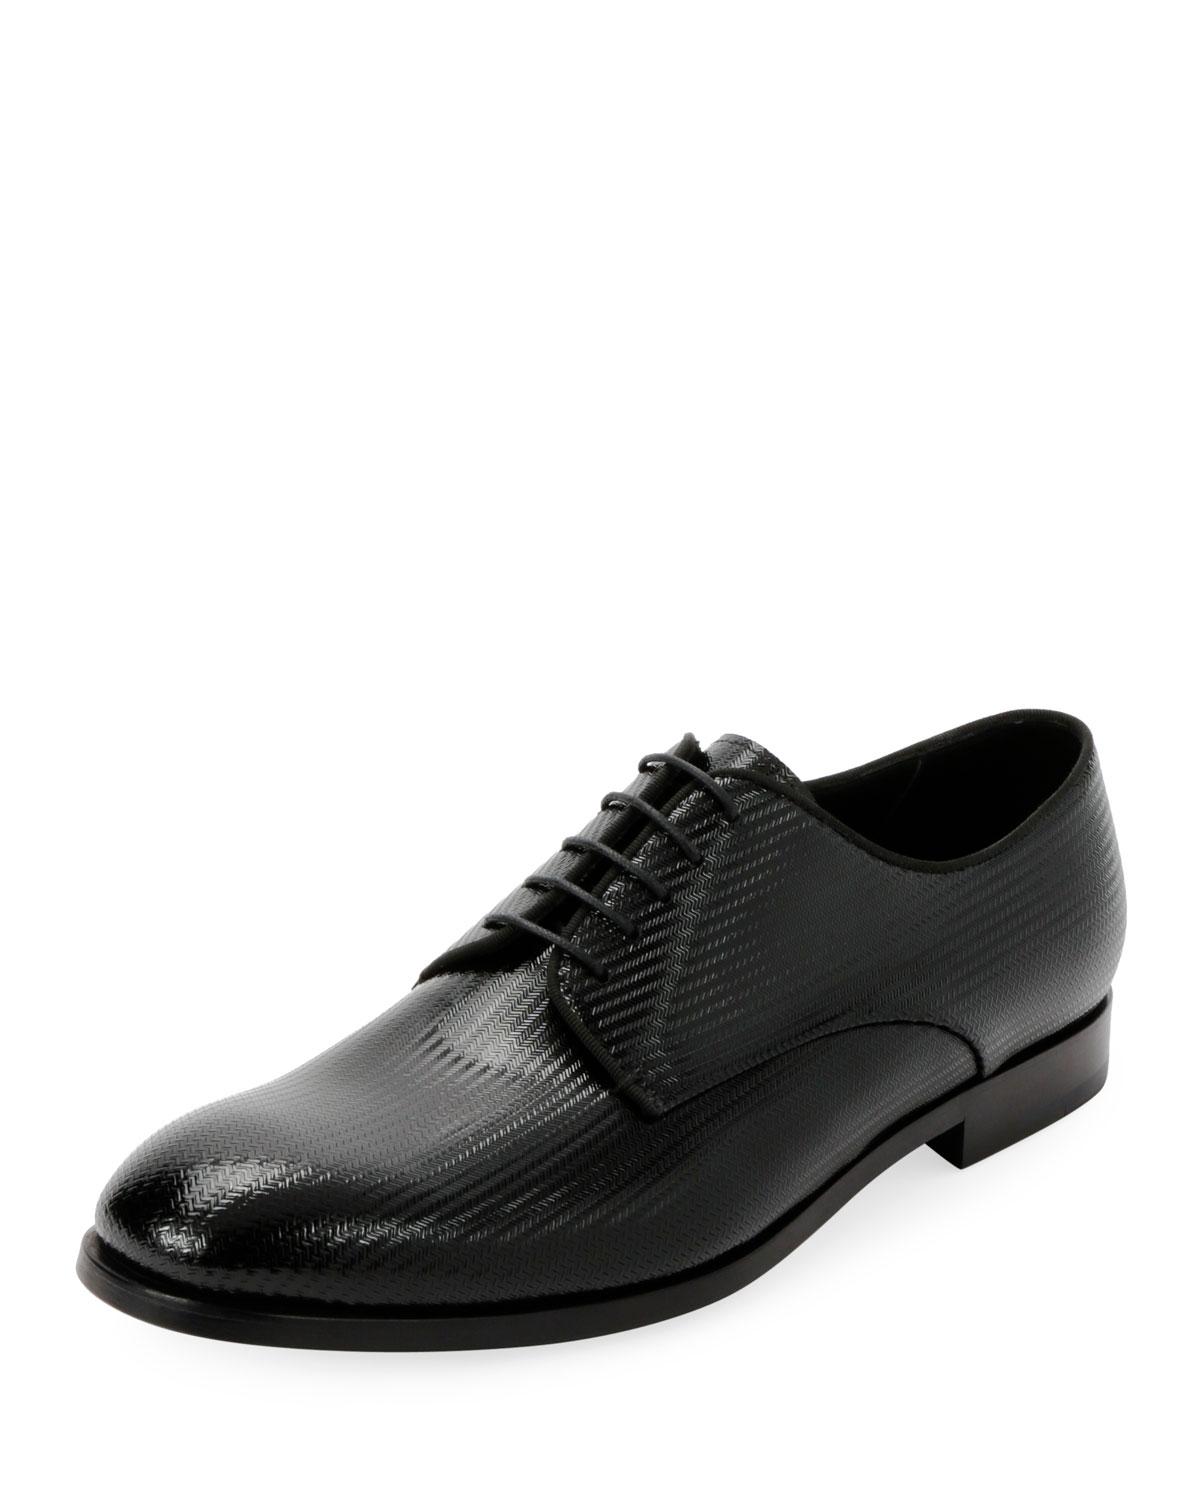 Lyst - Giorgio Armani Men's Formal Patent Chevron Leather Lace-up Shoe ...